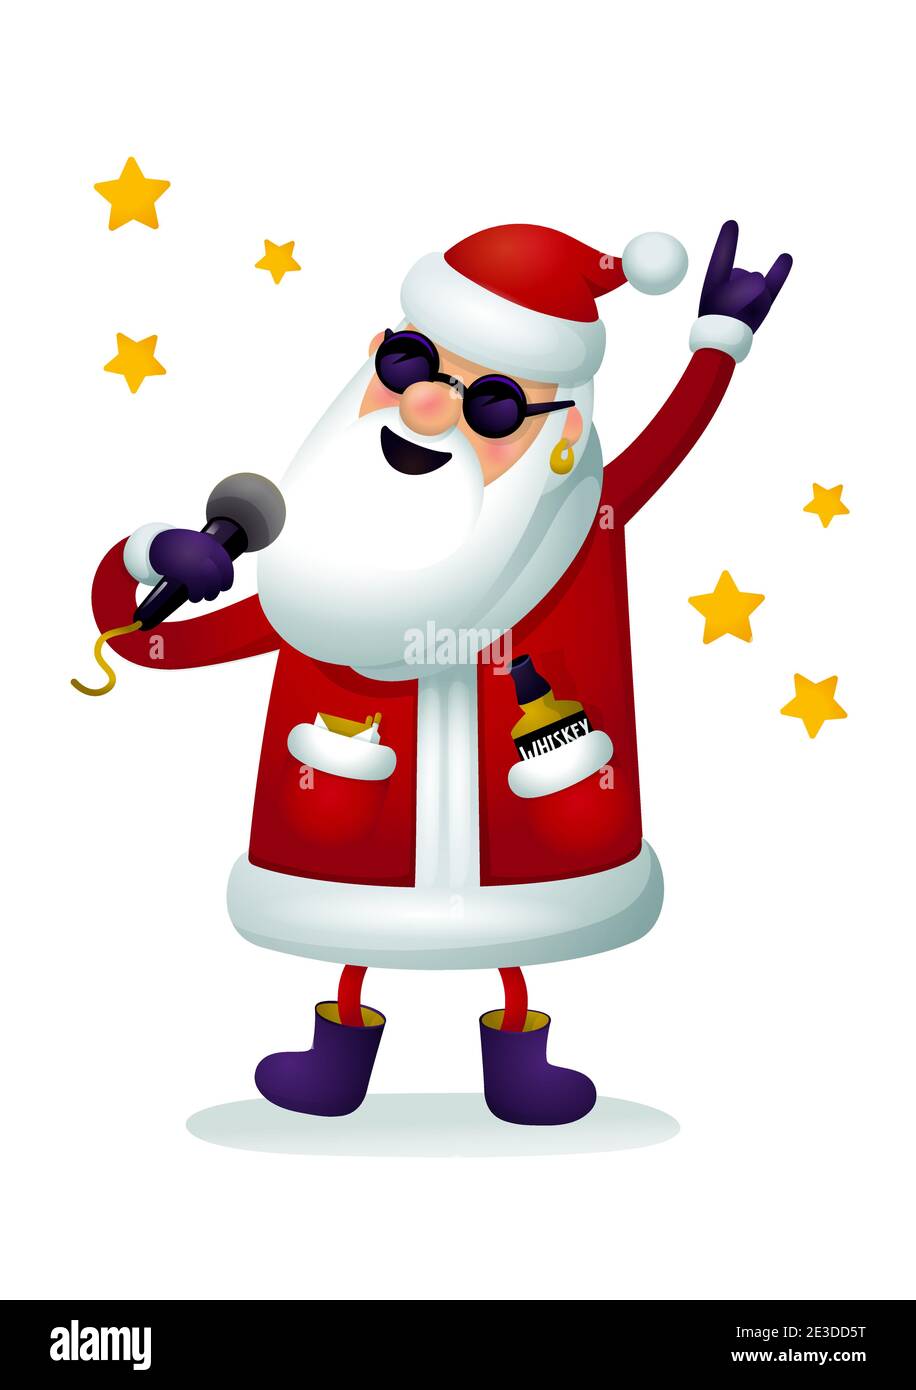 Roc-n-roll personnage du Père Noël. Chant Père Noël - rock star avec  microphone isolé sur fond blanc Image Vectorielle Stock - Alamy